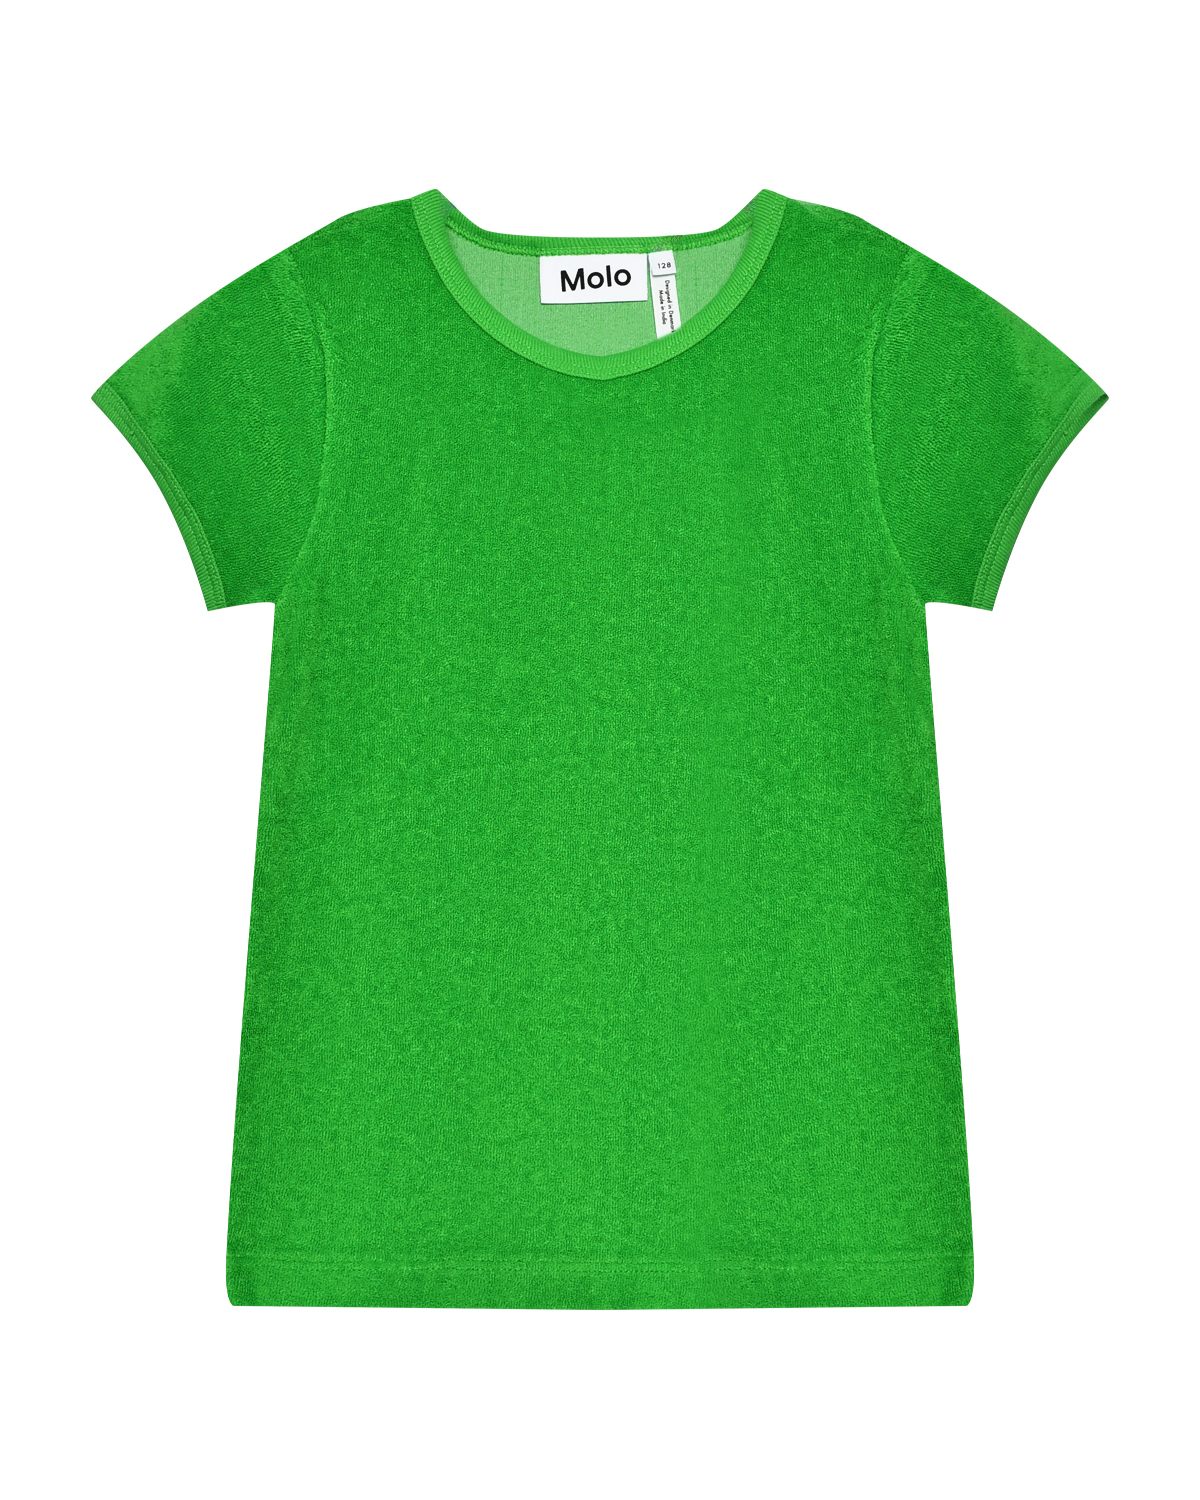 Футболка Raquel Classic Green Molo, размер 116, цвет нет цвета - фото 1